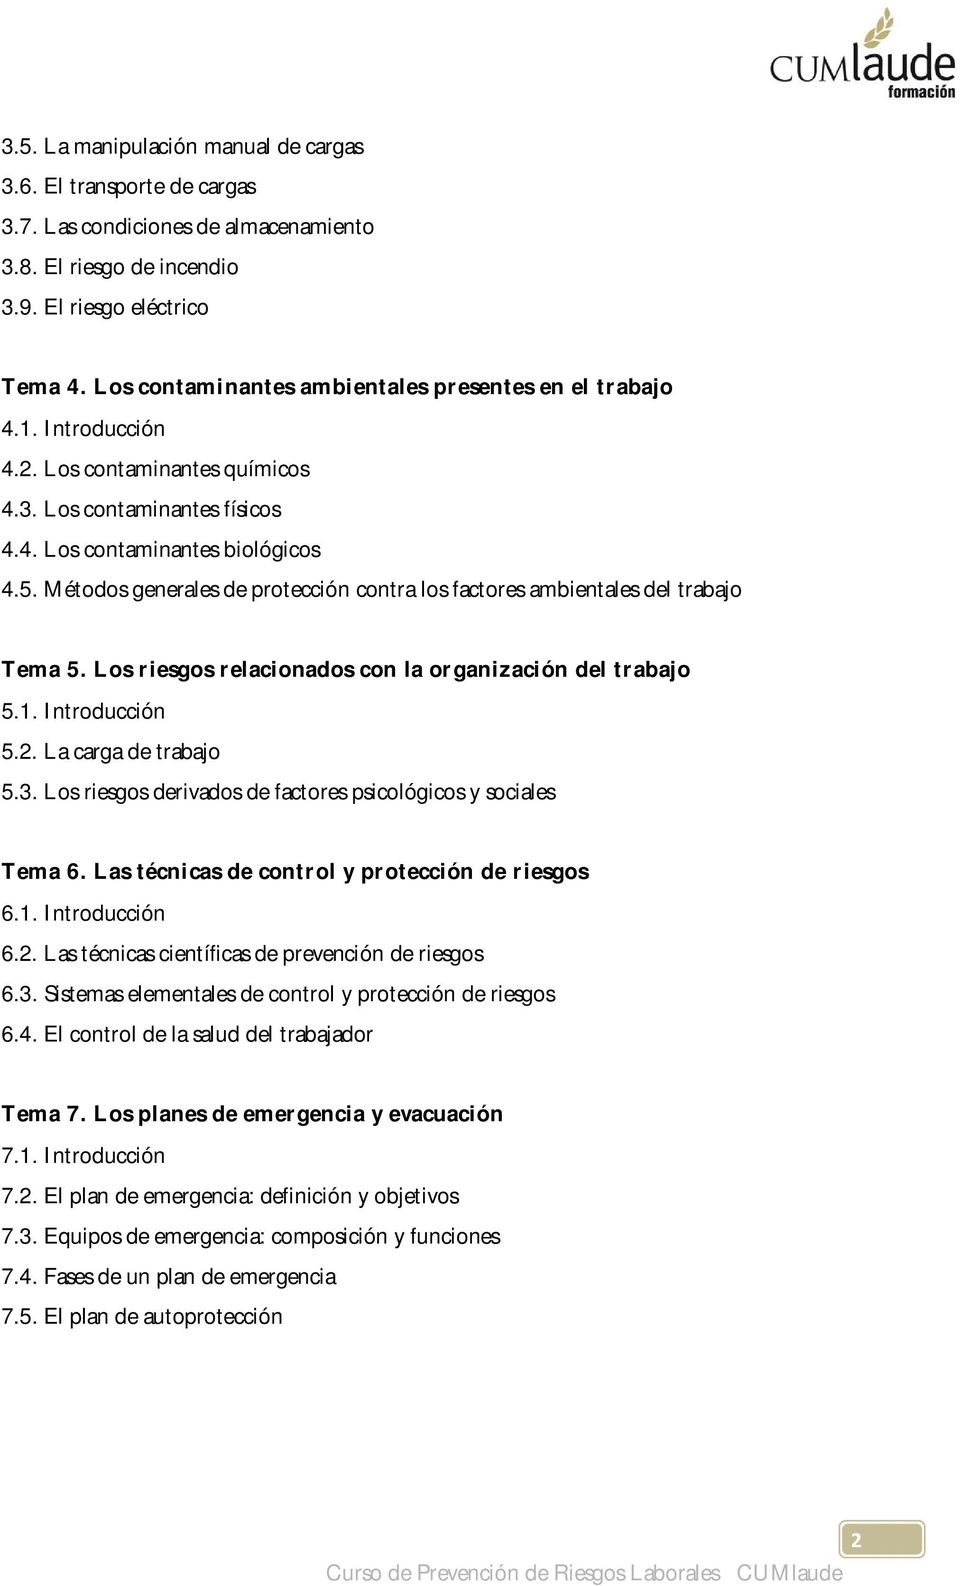 Métodos generales de protección contra los factores ambientales del trabajo Tema 5. Los riesgos relacionados con la organización del trabajo 5.1. Introducción 5.2. La carga de trabajo 5.3.